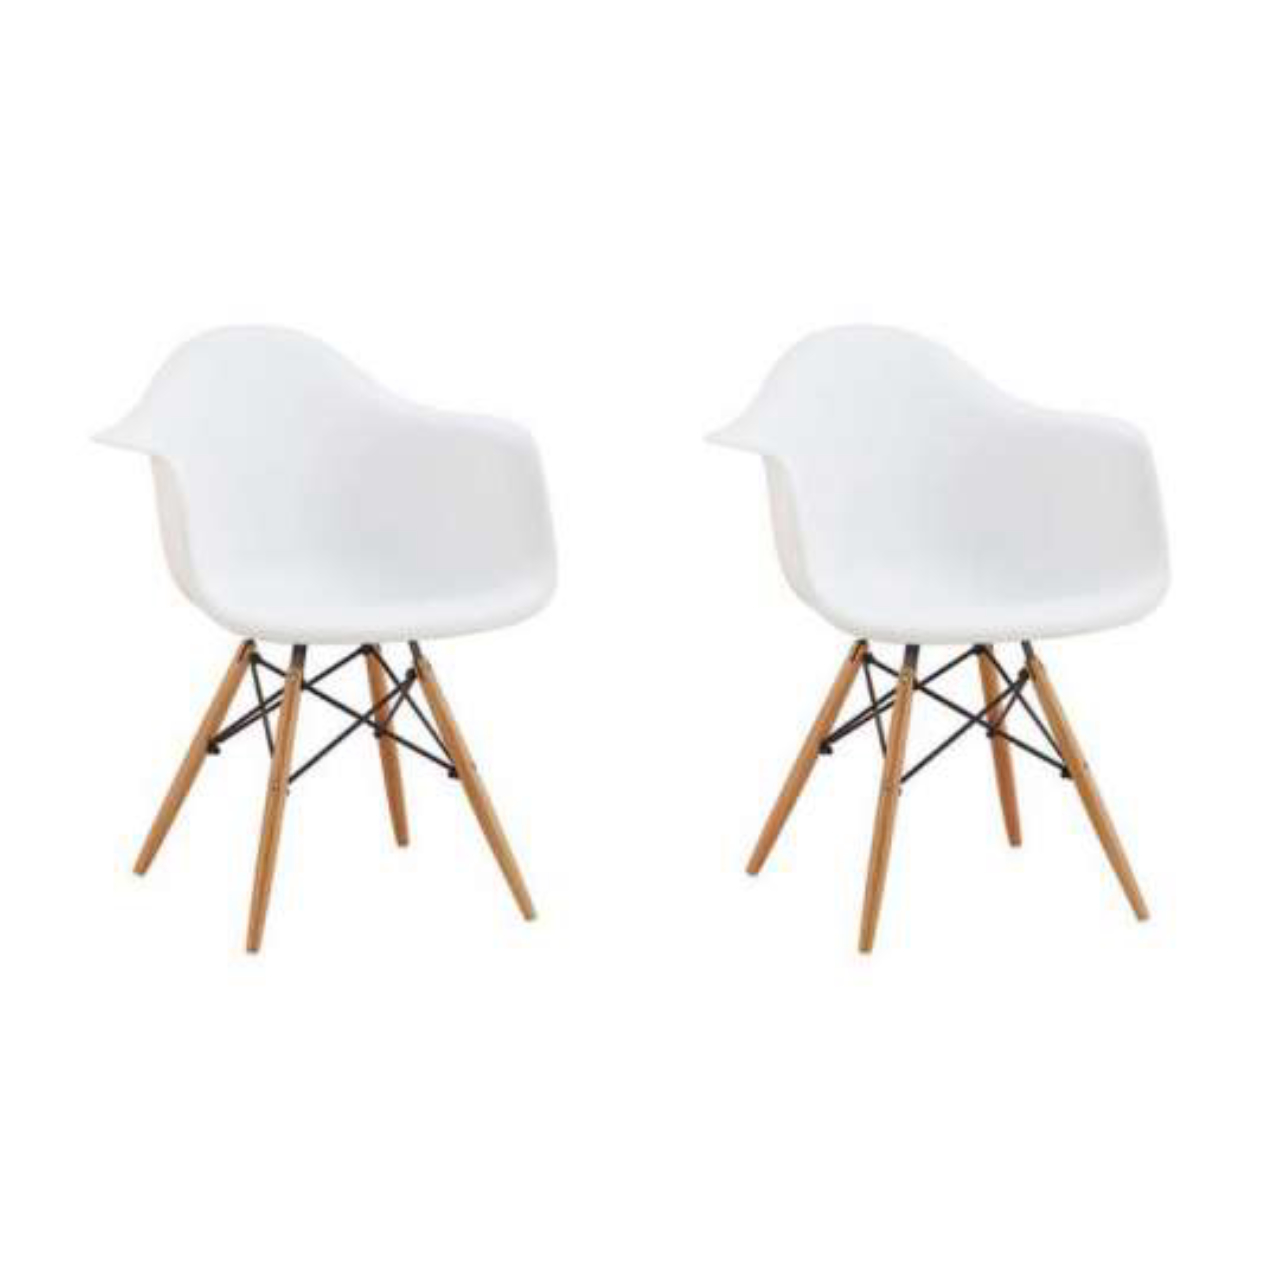 O design emblemático das cadeiras DSW de Charles e Ray Eames agrega muito estilo para a sala de jantar.<br>Foto: Divulgação  